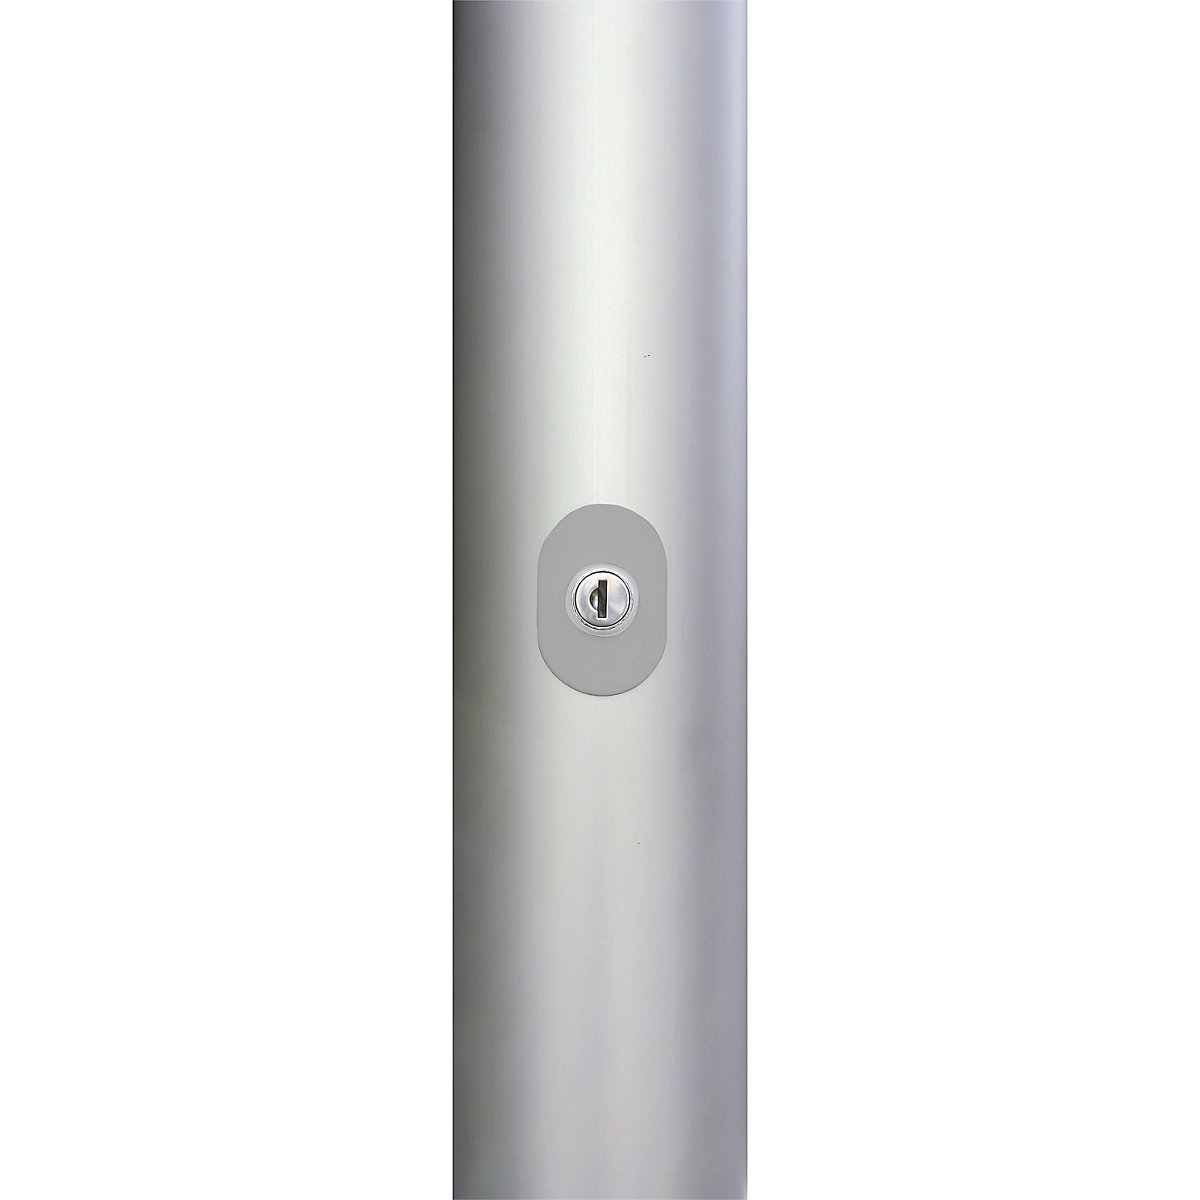 Mannus – PIRAT aluminium flag pole (Product illustration 5)